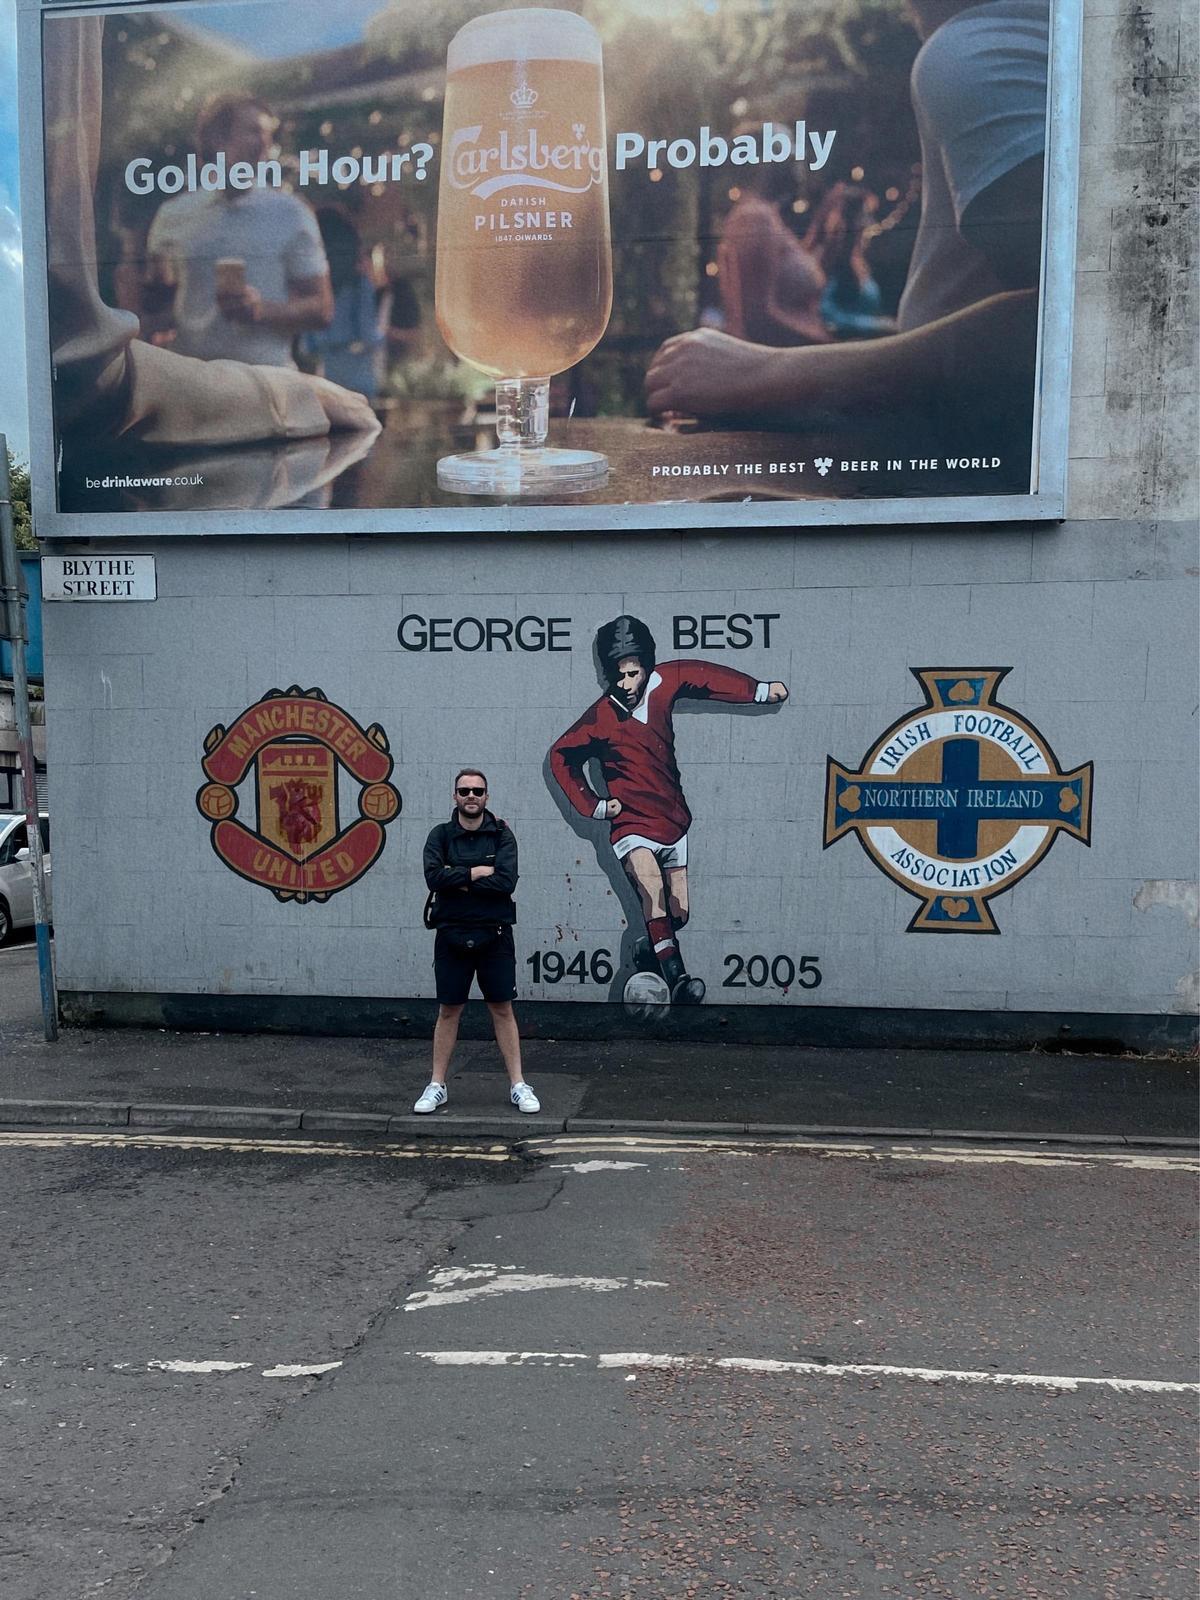 Un mural dedicado a George Best, exjugador del Manchester United y de la selección de Irlanda del Norte (Belfast).